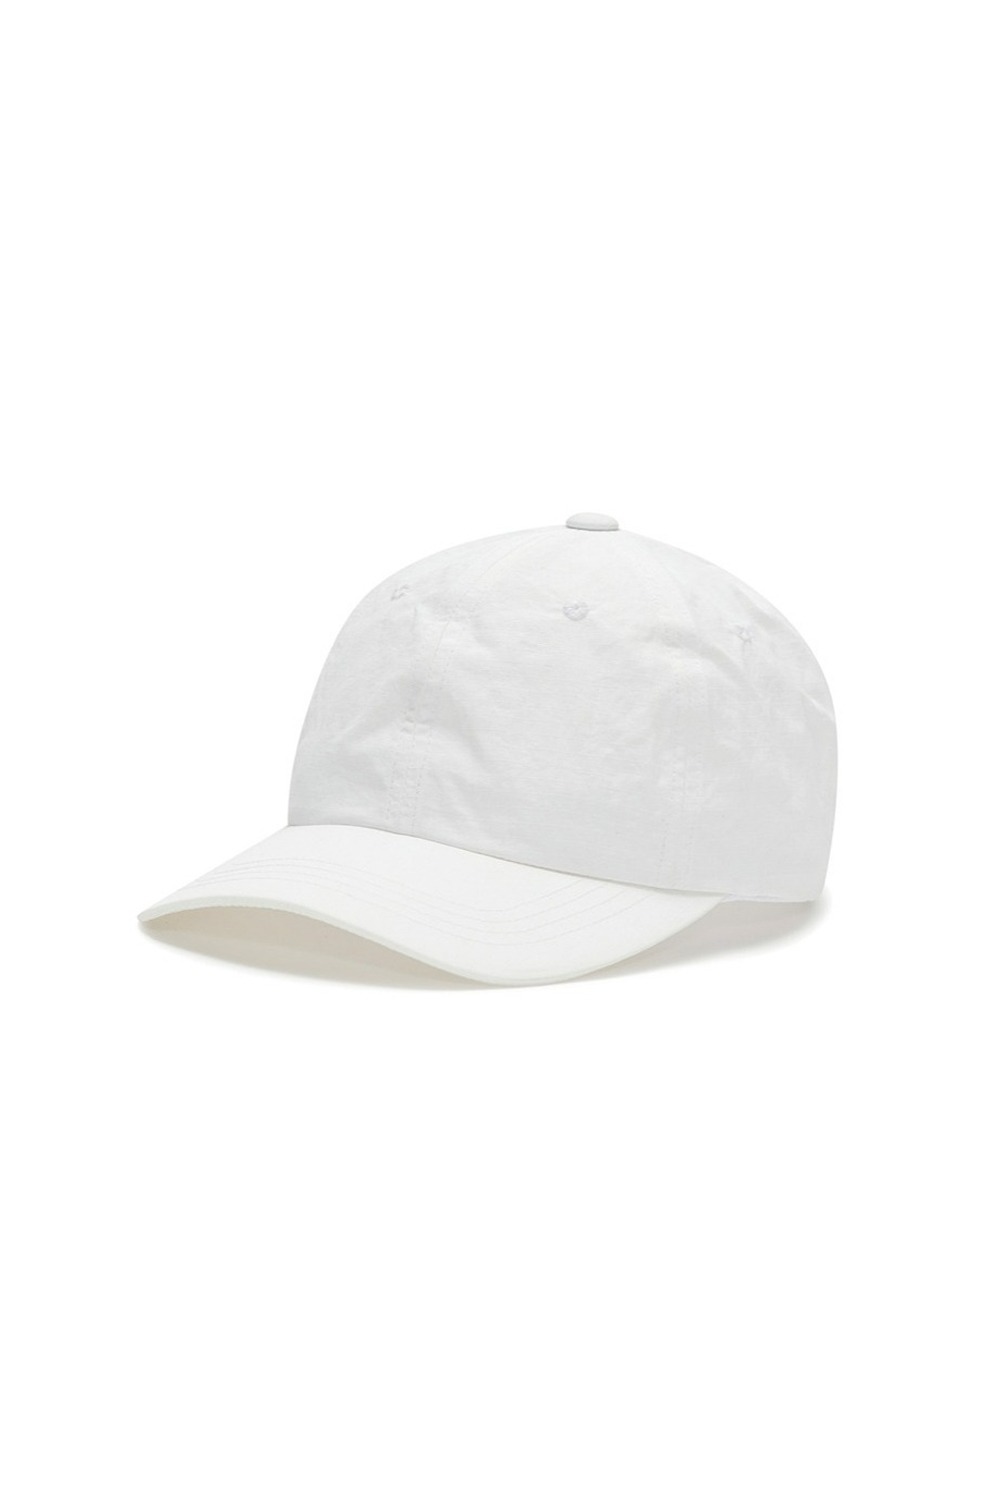 BASIC BALL CAP (WHITE) RICHEZ